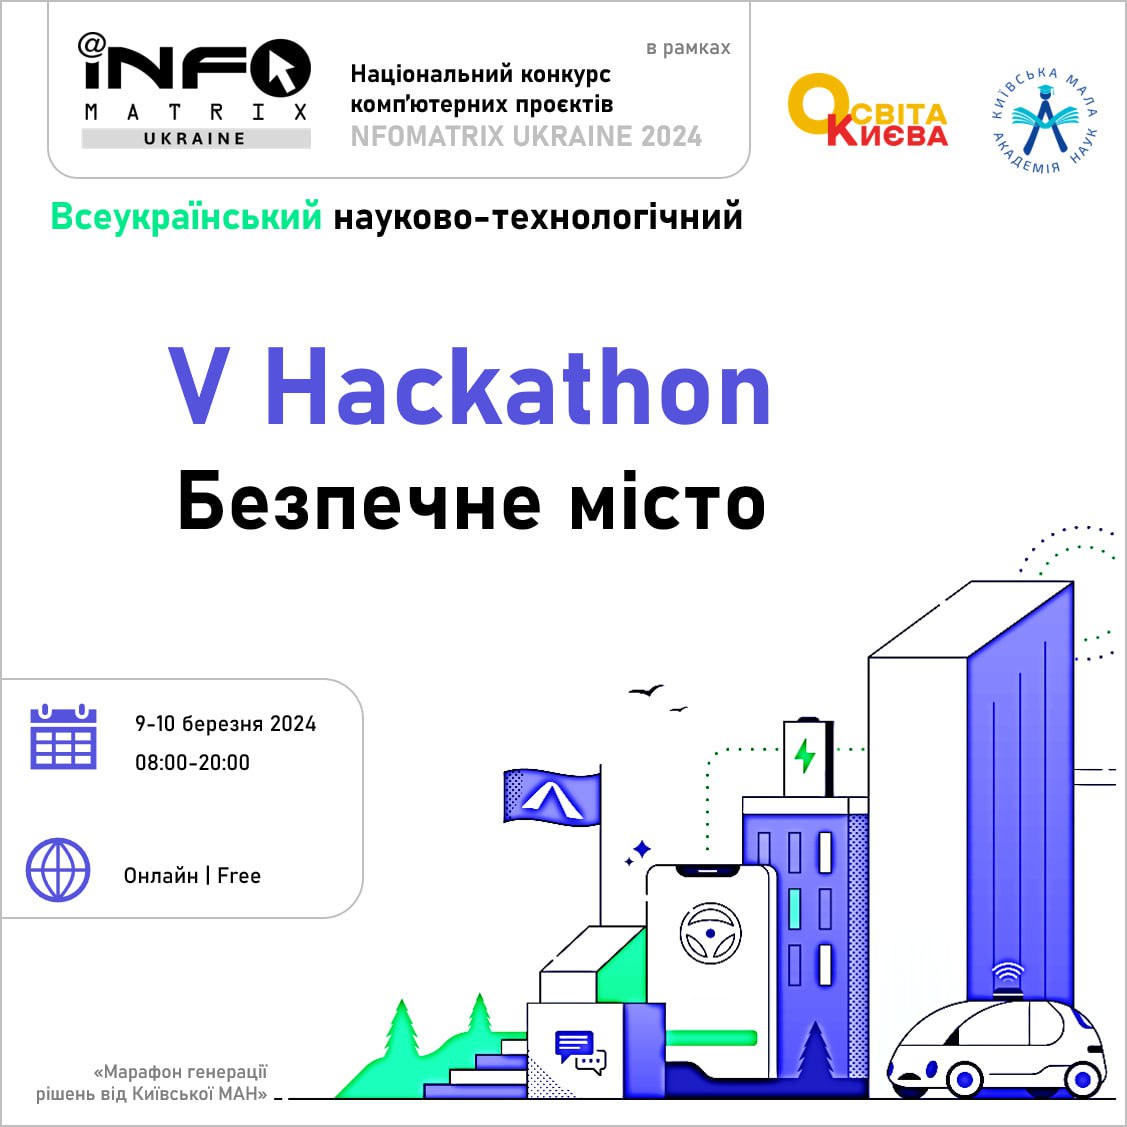 Hackathon 122